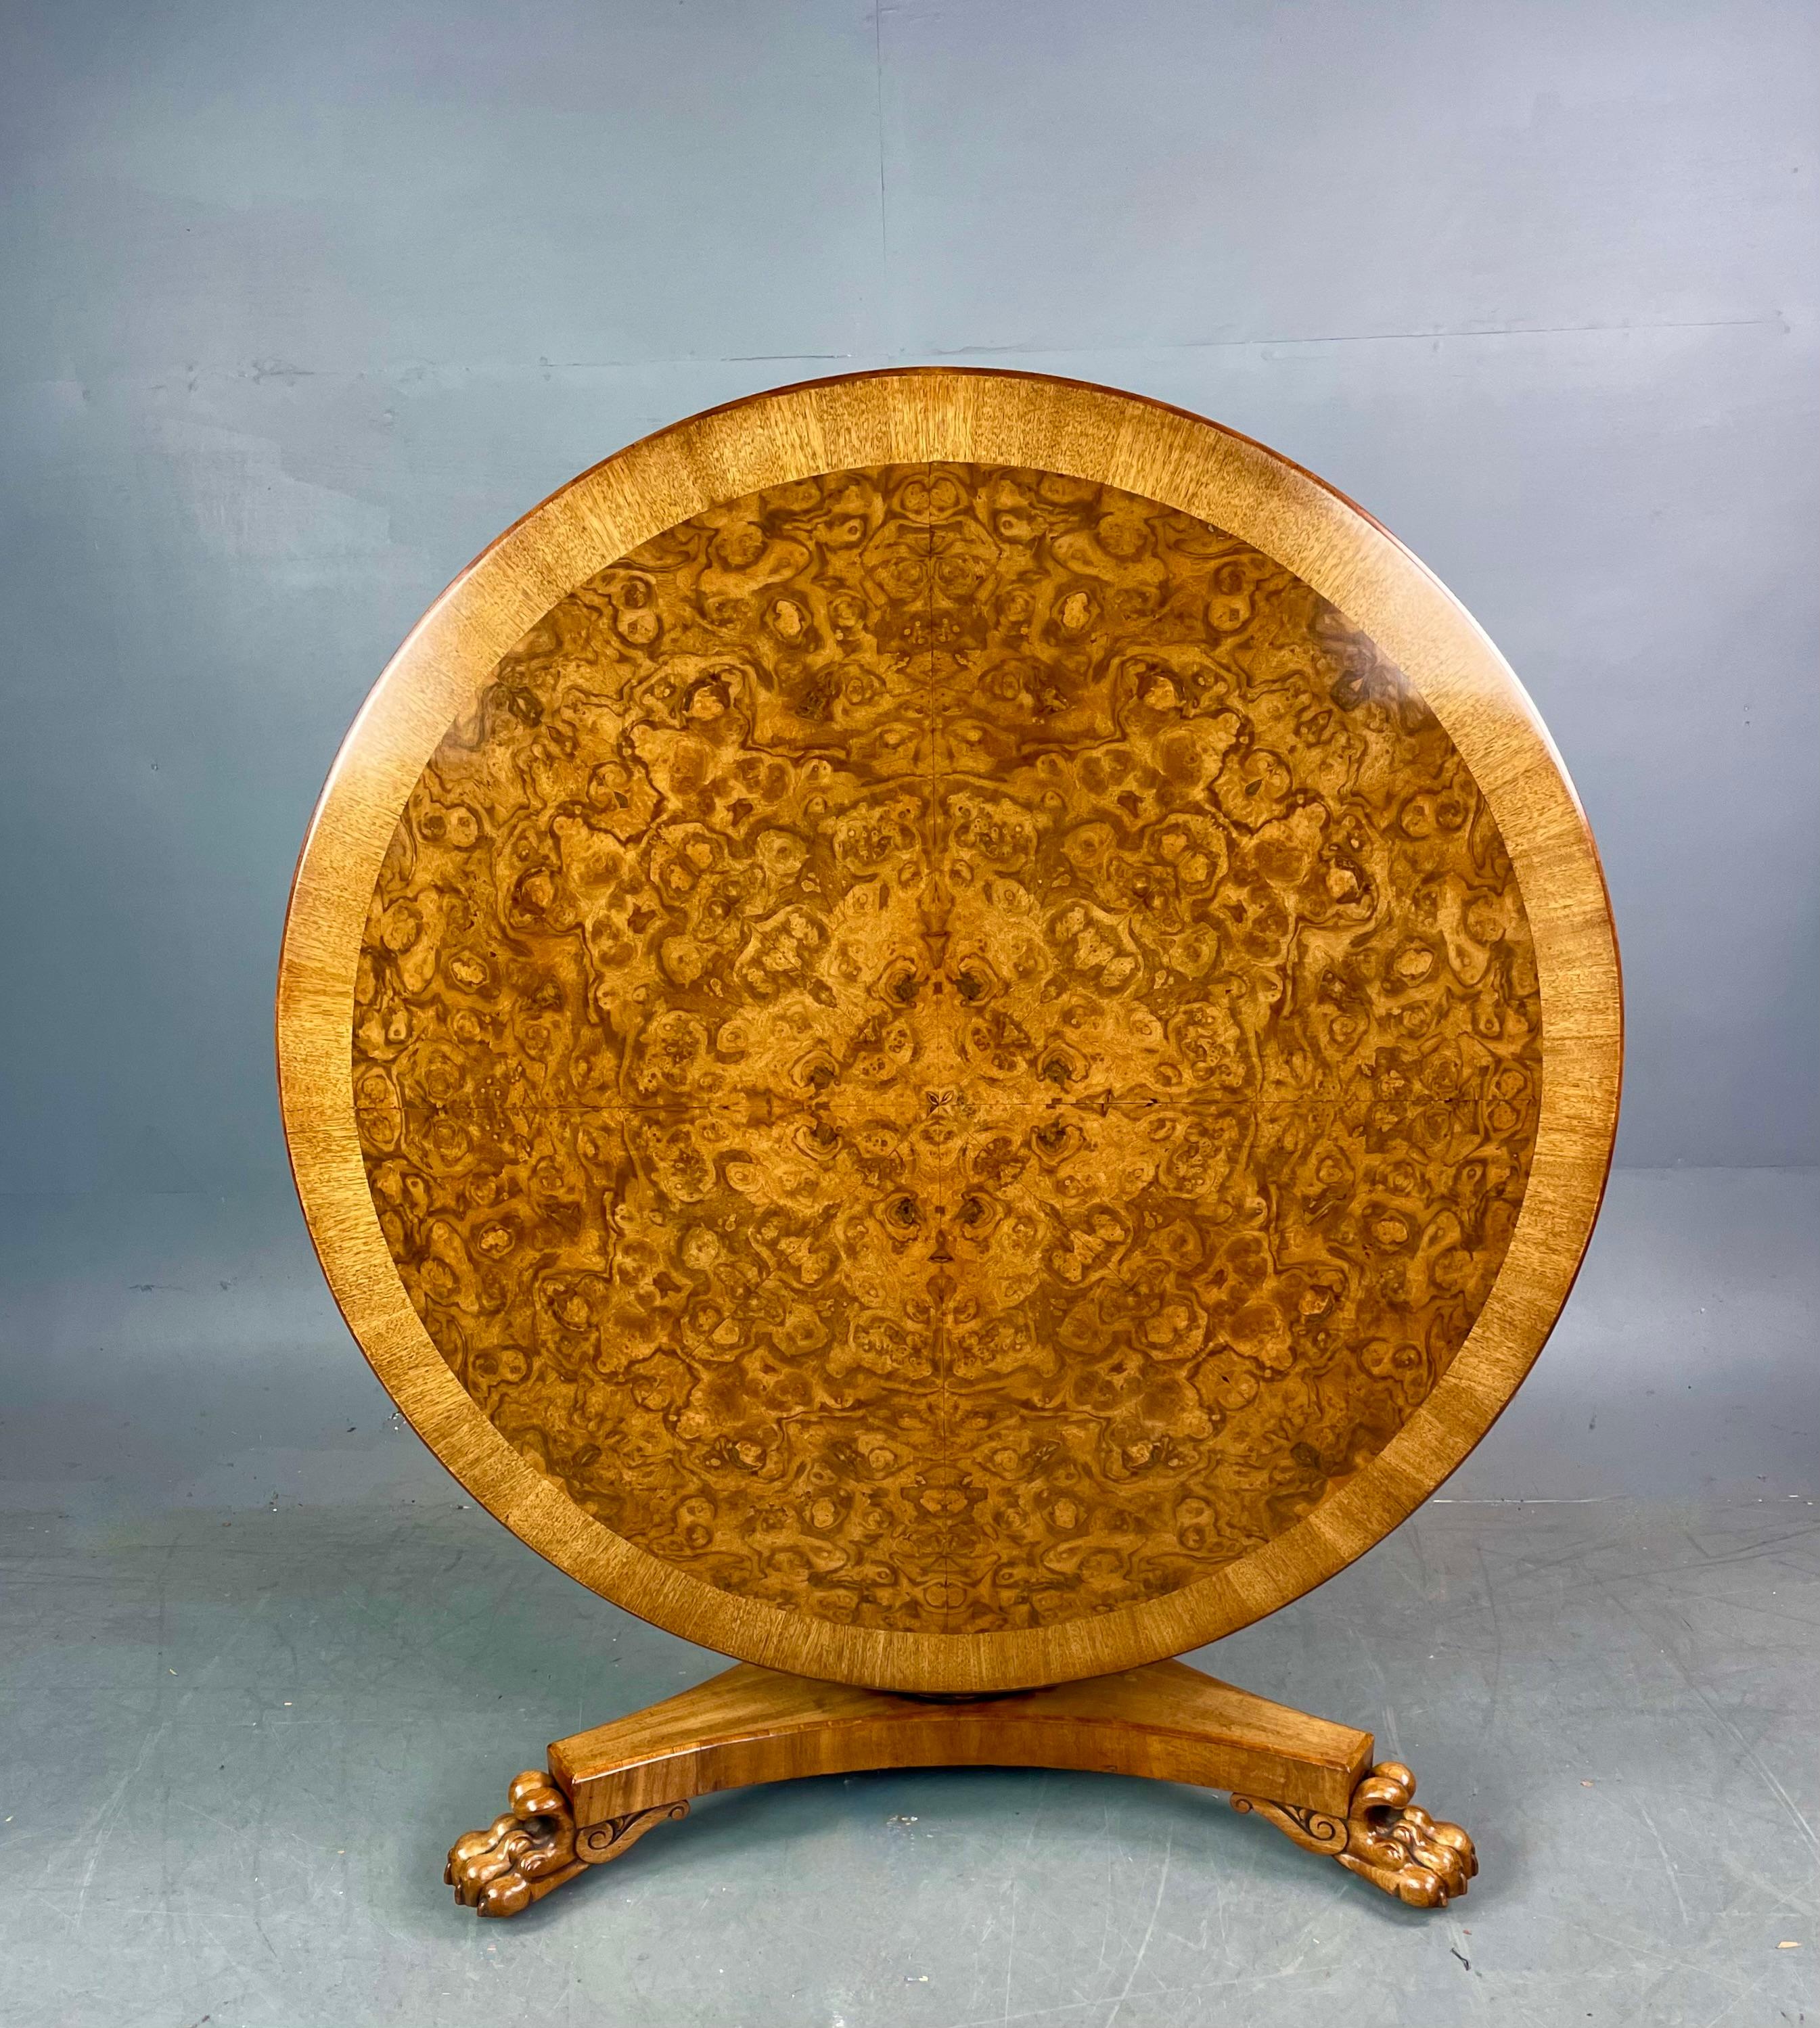 Feine Qualität Regency runde Mitte / Esstisch circa 1820 .
Der Tisch hat eine fantastische gemaserte Walnussplatte mit Walnuss Kreuzband, es ist eine fantastische Farbe und in großen un markiert Zustand. das wird sechs bequem sitzen mit 131 cm